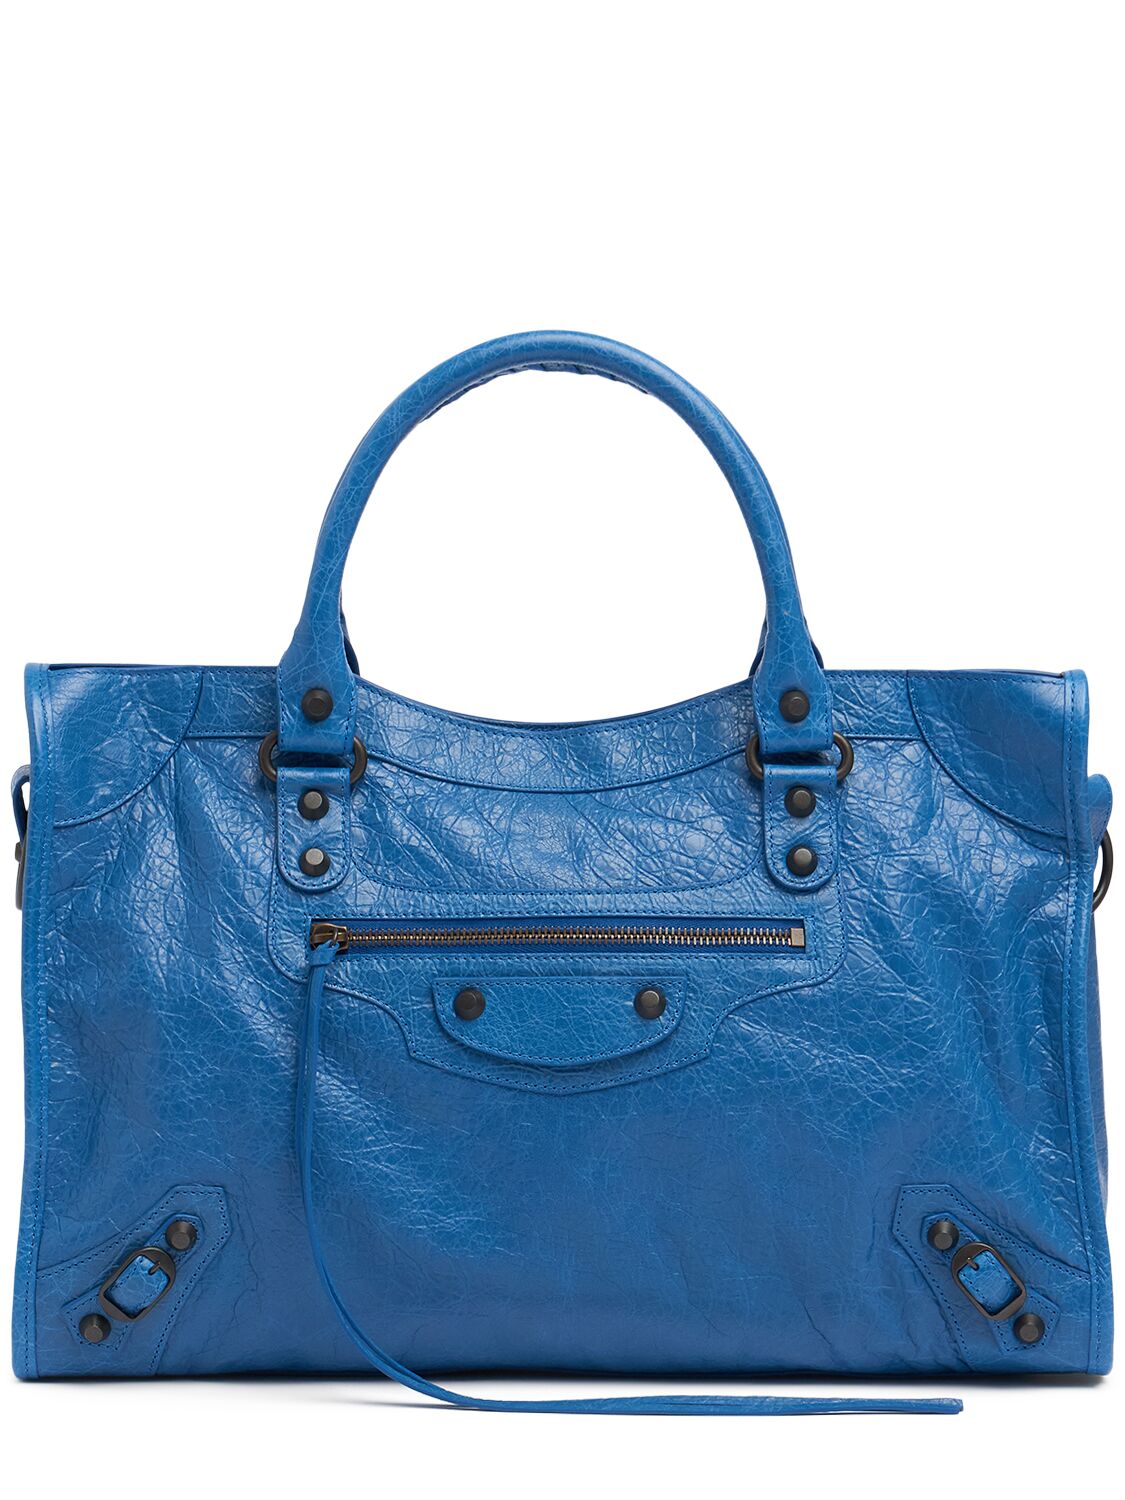 Balenciaga Medium Le City Arena Storico Leather Bag In Blue